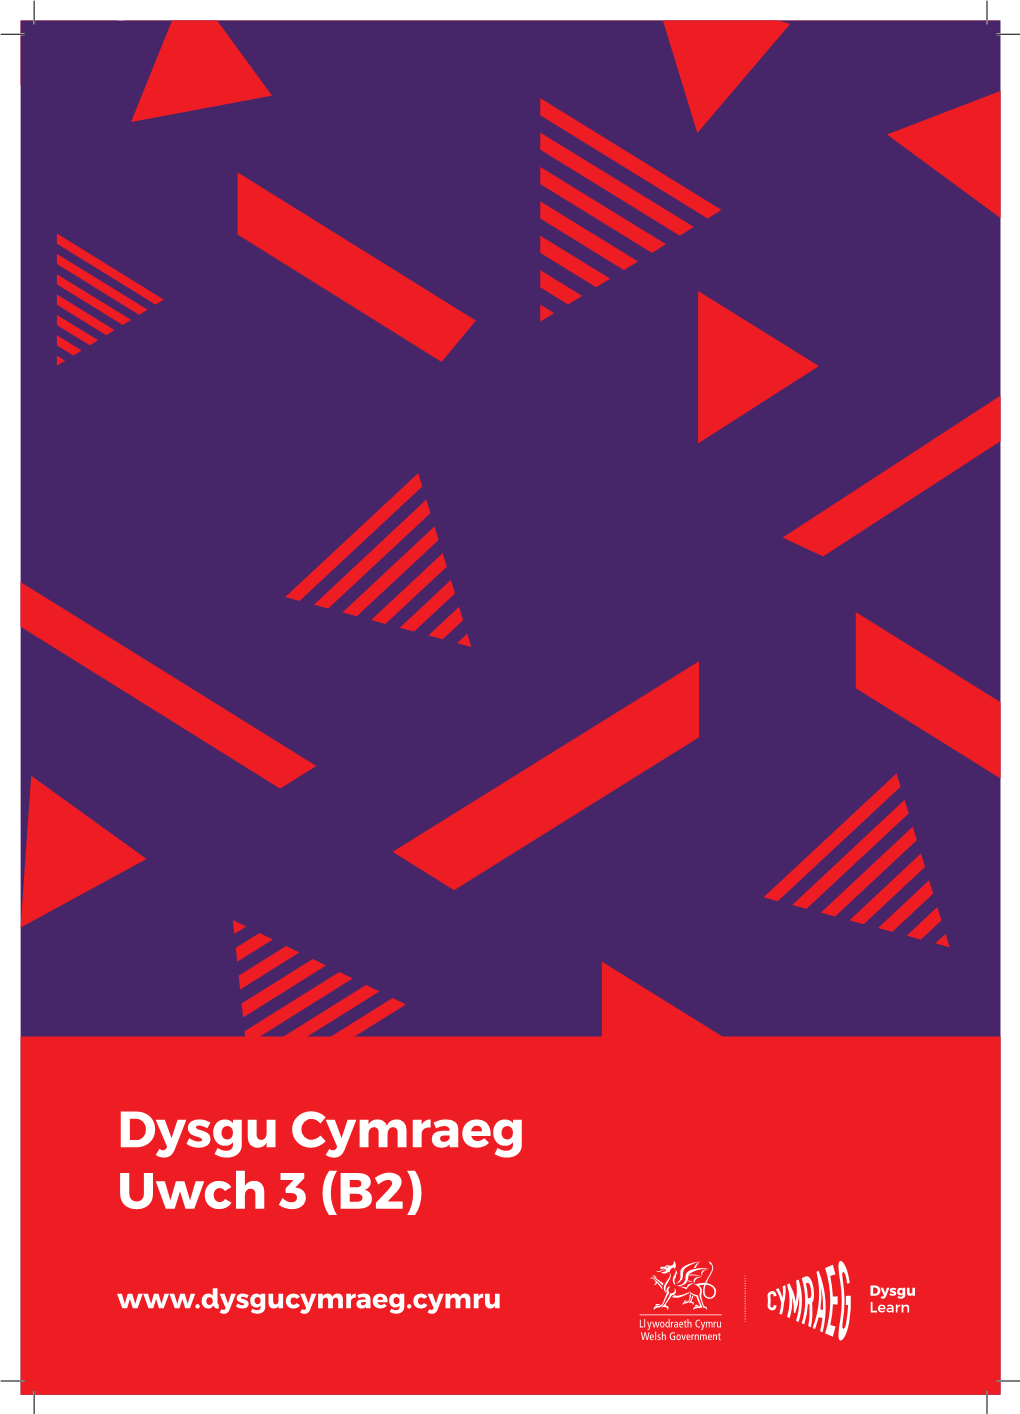 Dysgu Cymraeg Uwch 3 (B2)